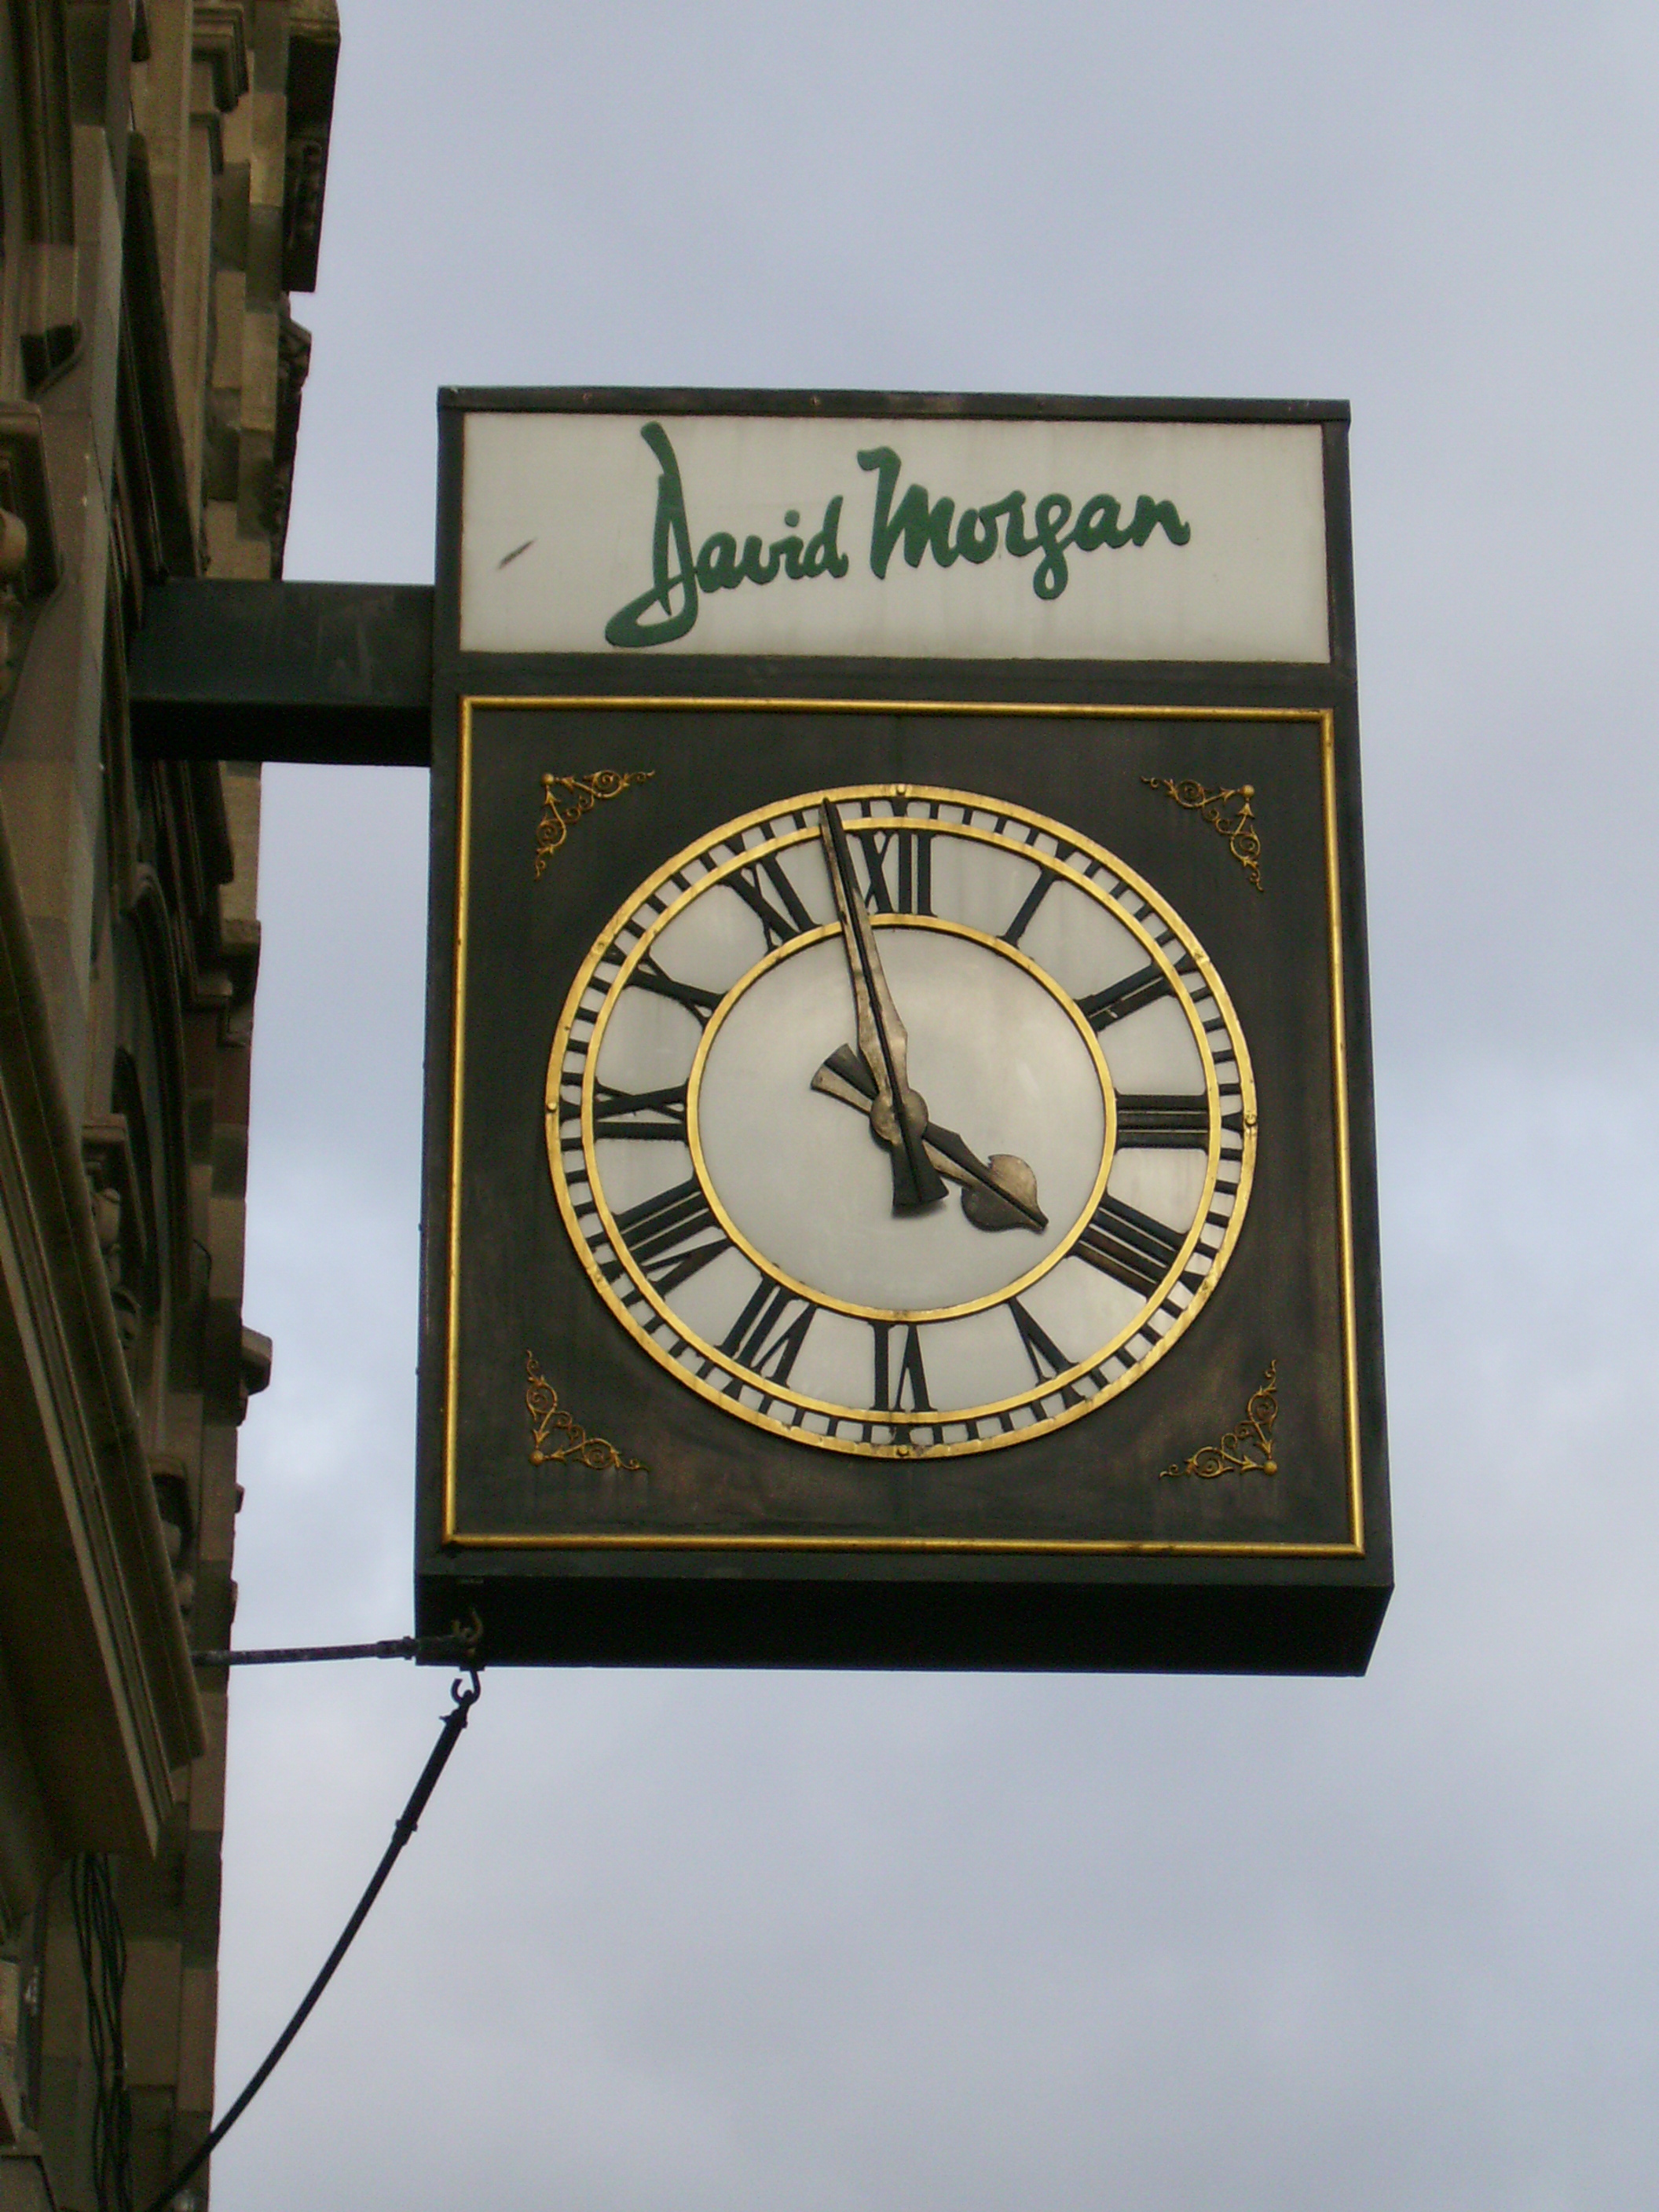 David Morgan clock 001